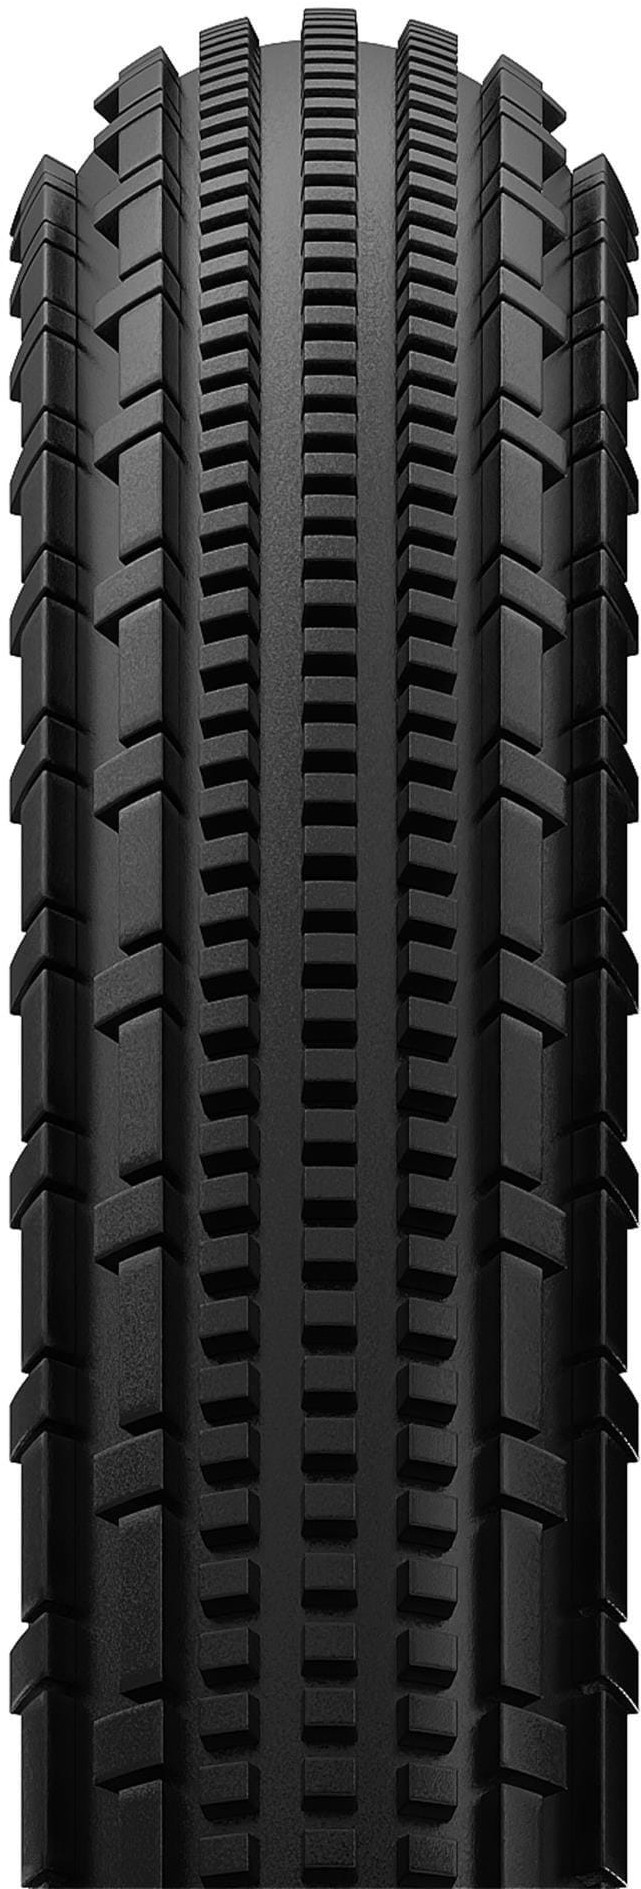 Gravelking SK Plus 700c Gravel Tyre image 1